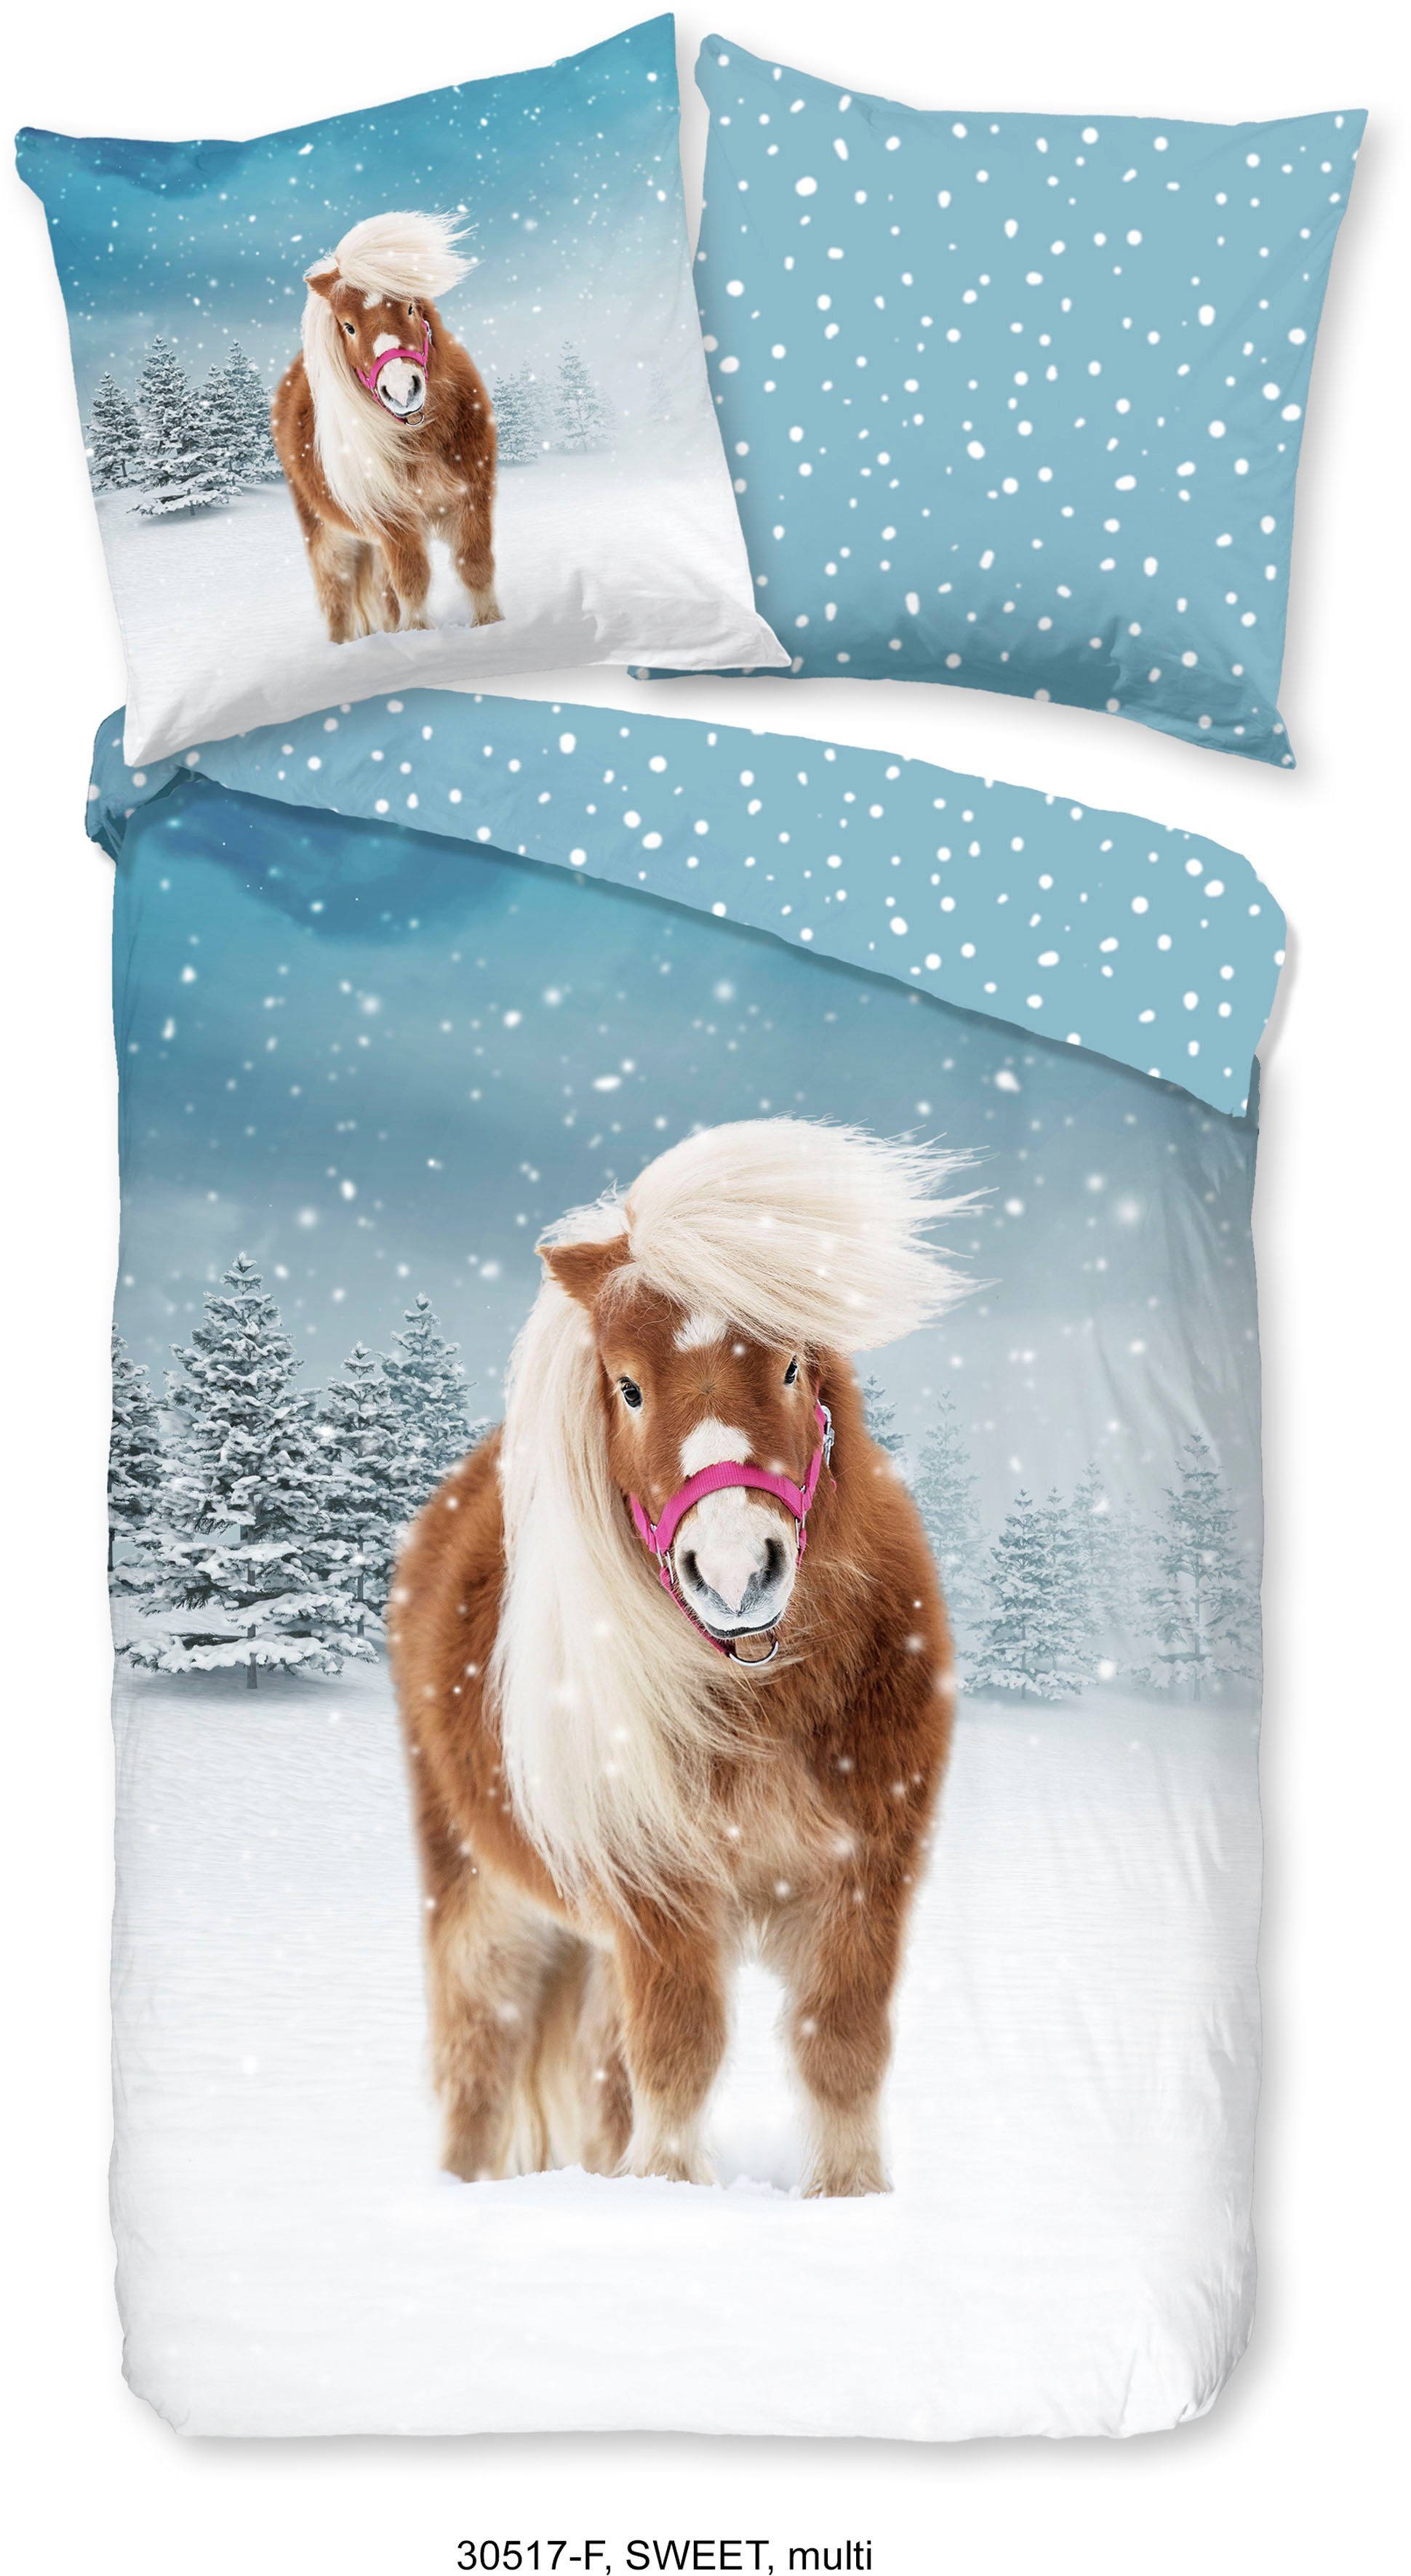 Kinderbettwäsche Sweet Winter Horse, good morning, Biber, Flanell, 2 teilig, 100% Baumwolle, Pony, mit Reißverschluss